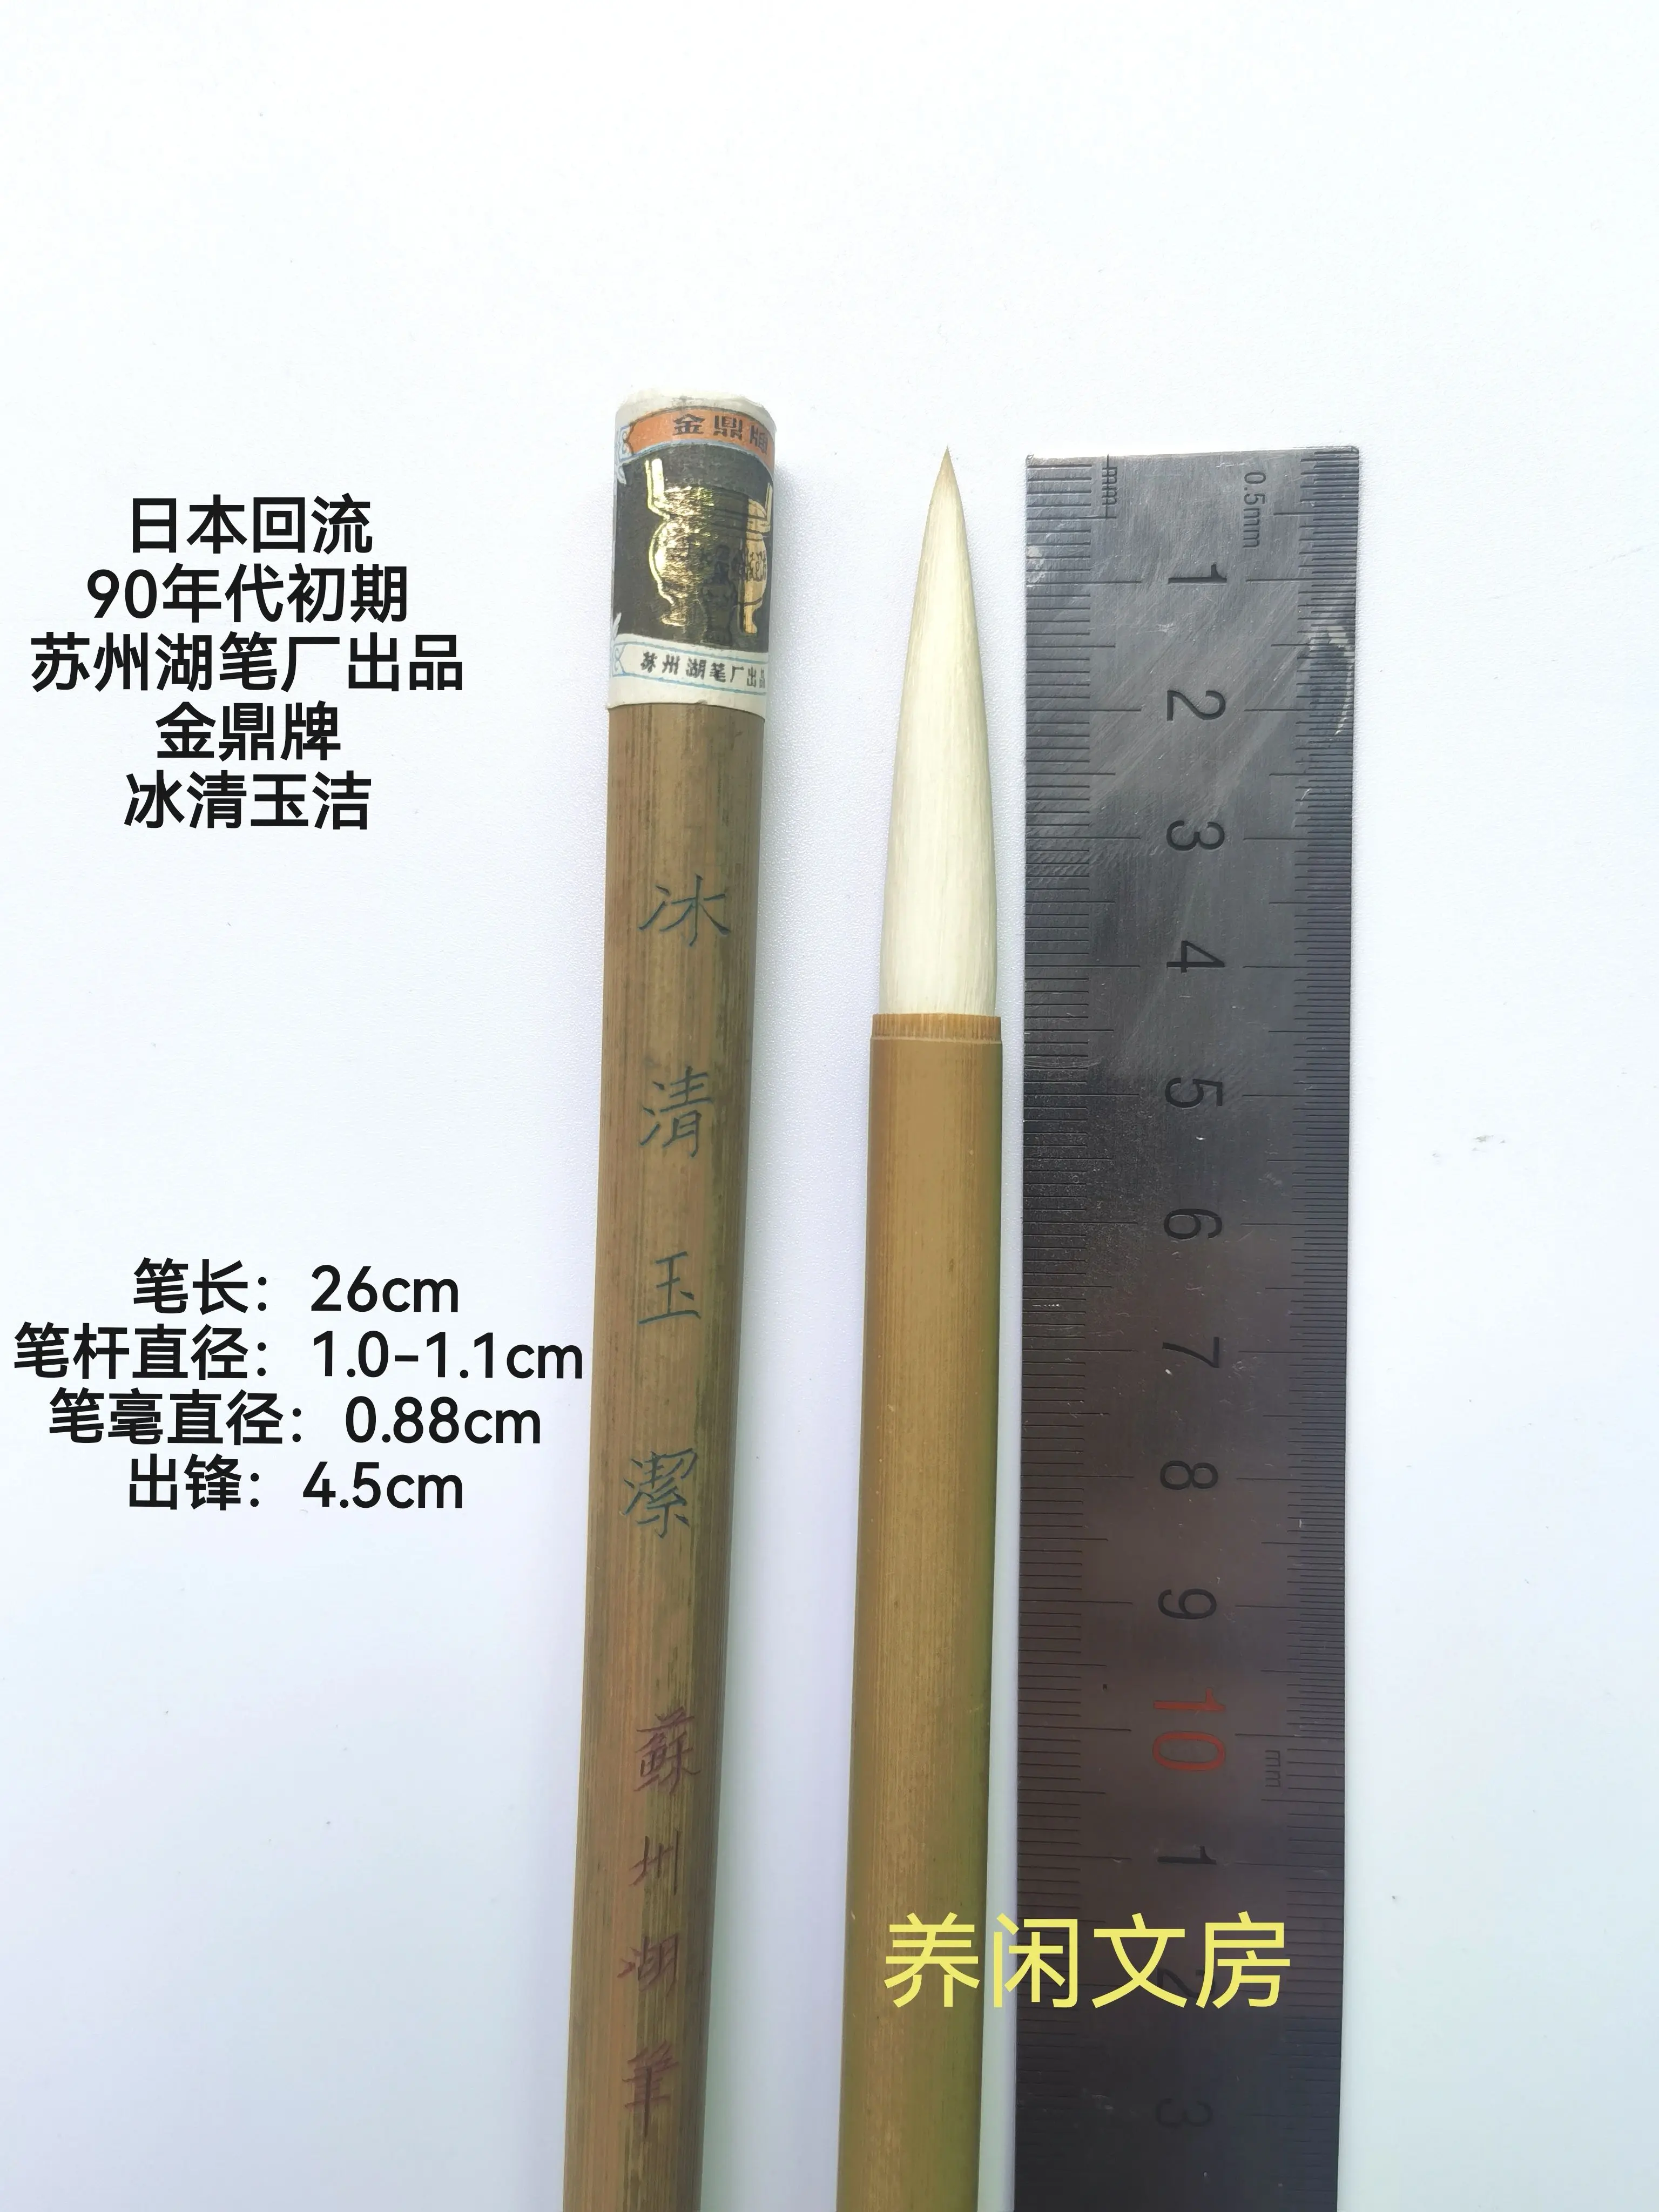 毛筆80初上海工藝出品火炬牌大蘭竹、中蘭竹、小蘭竹3支套筆-Taobao